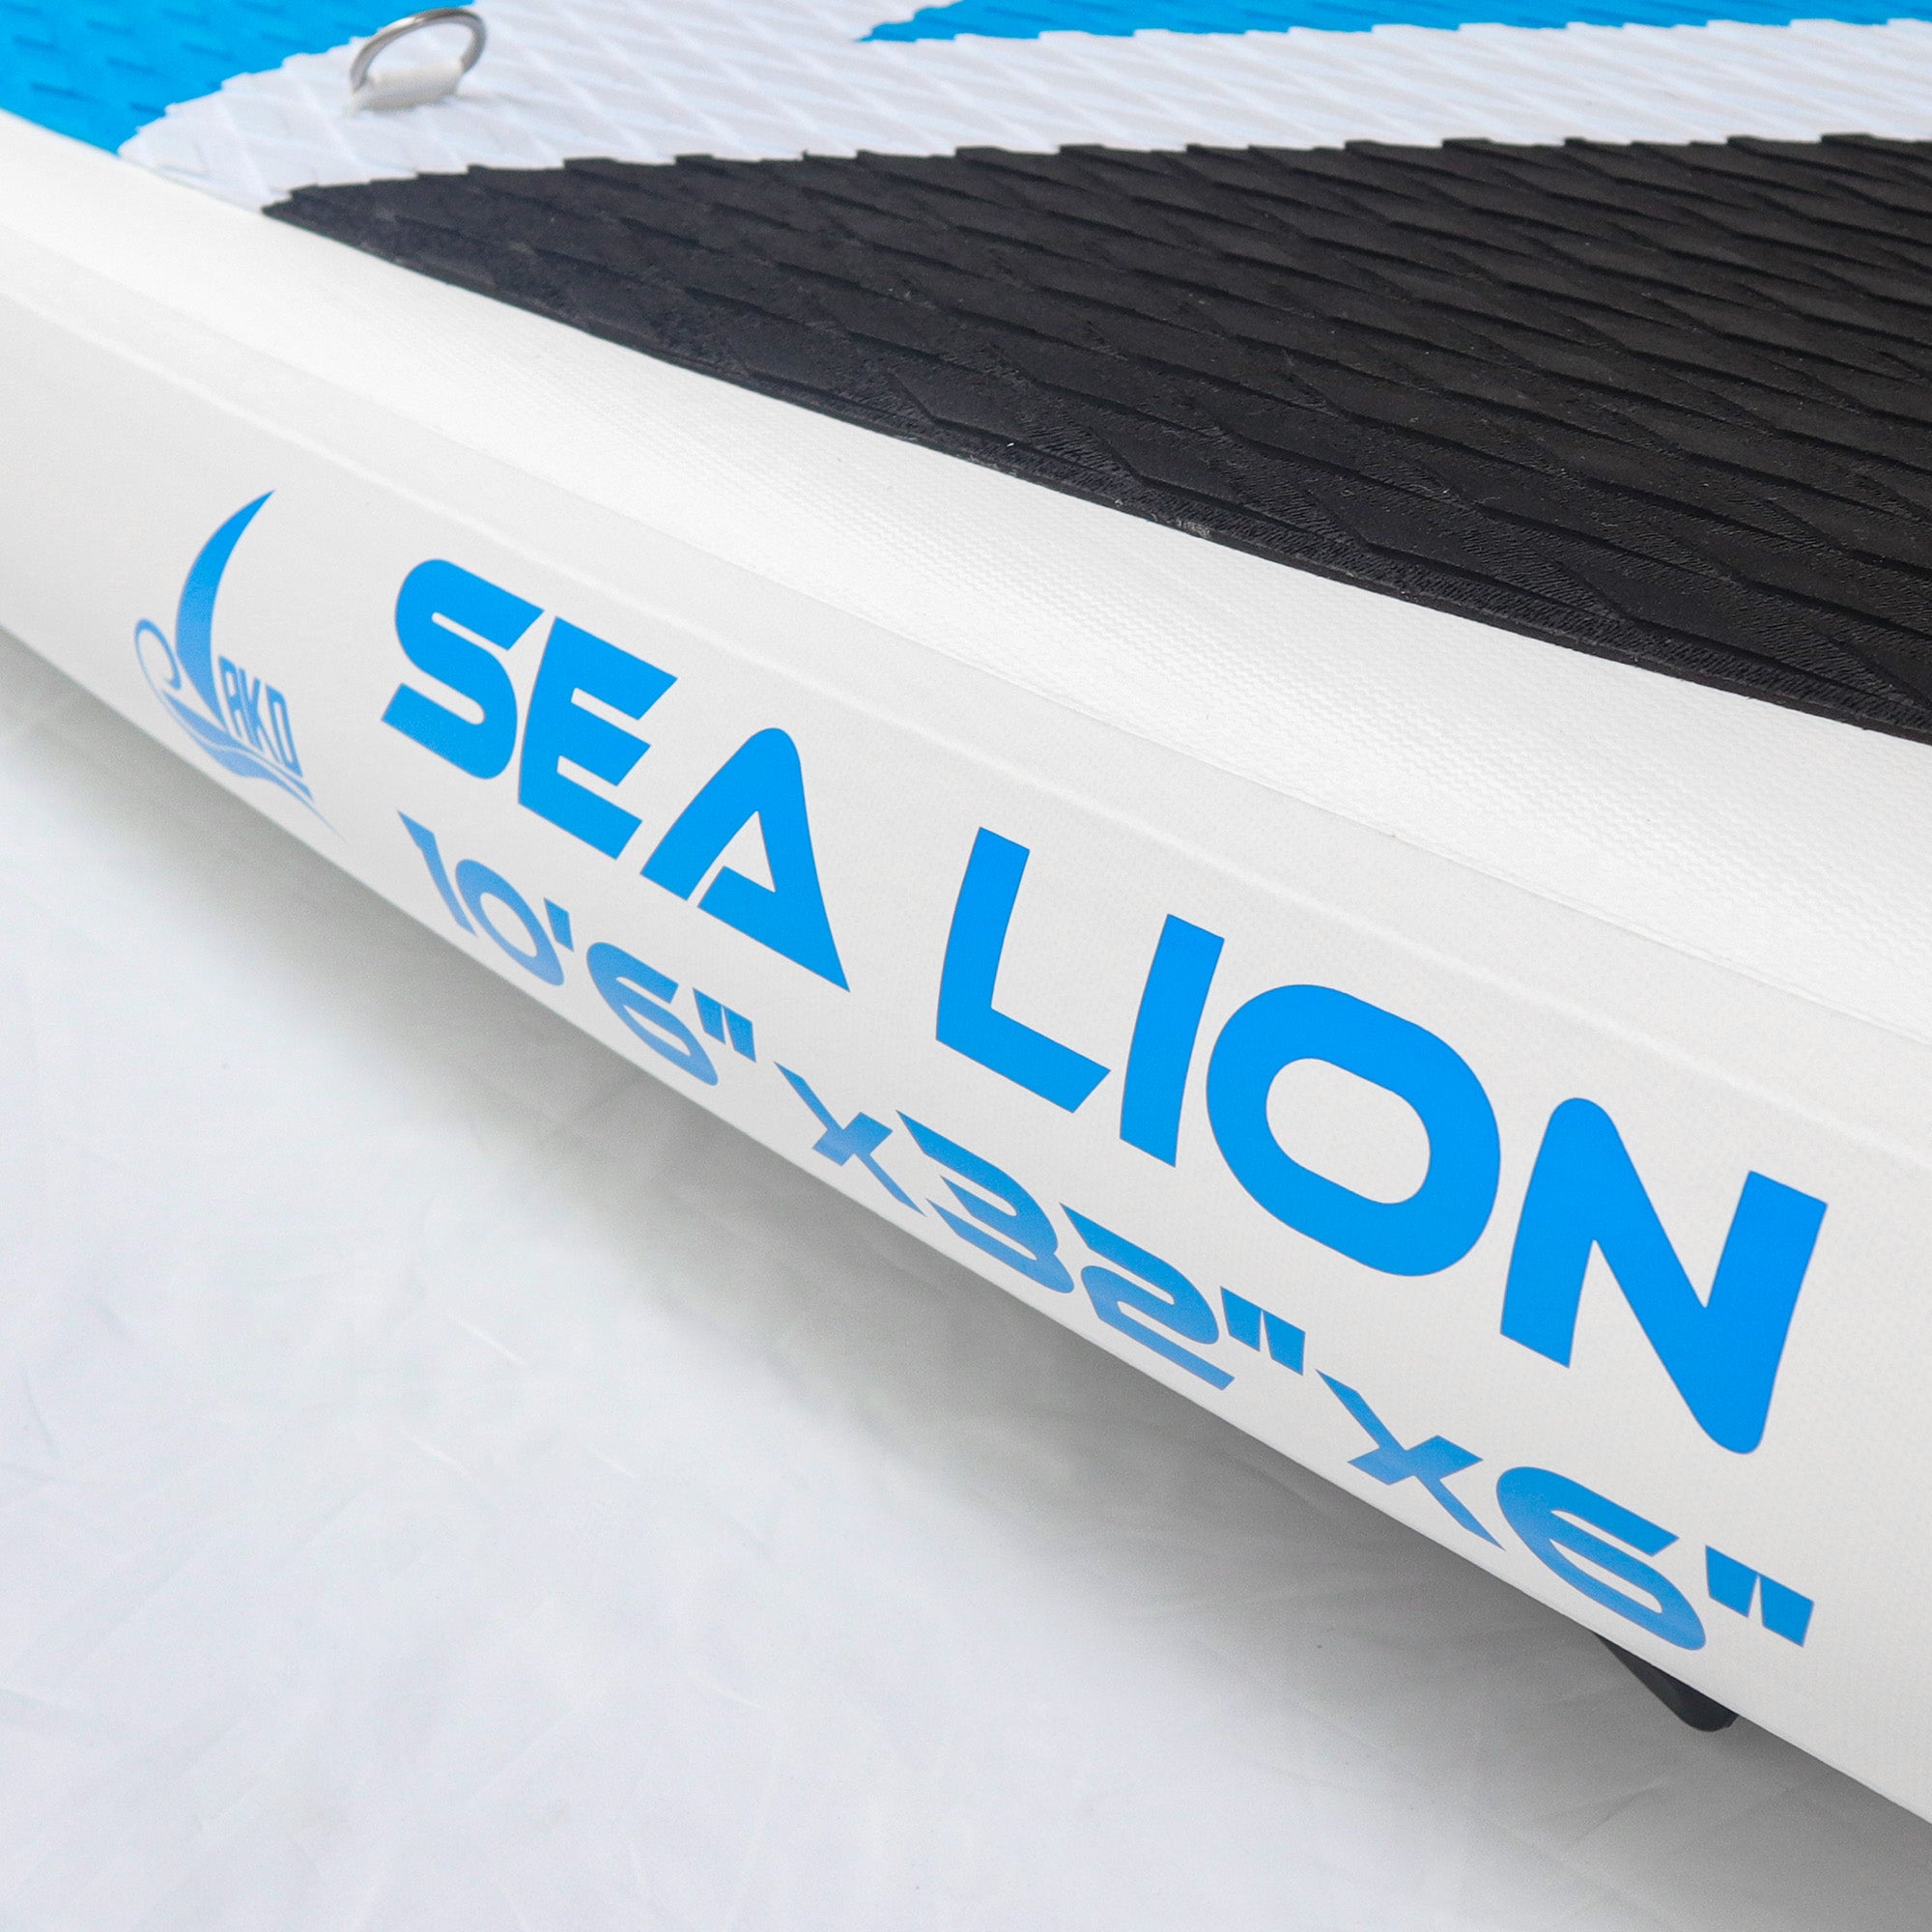 AKD SeaLion 10'6 "XL Stand Up Paddle Board SUP 320x86x15cm 160kg / 337L (Bleu)